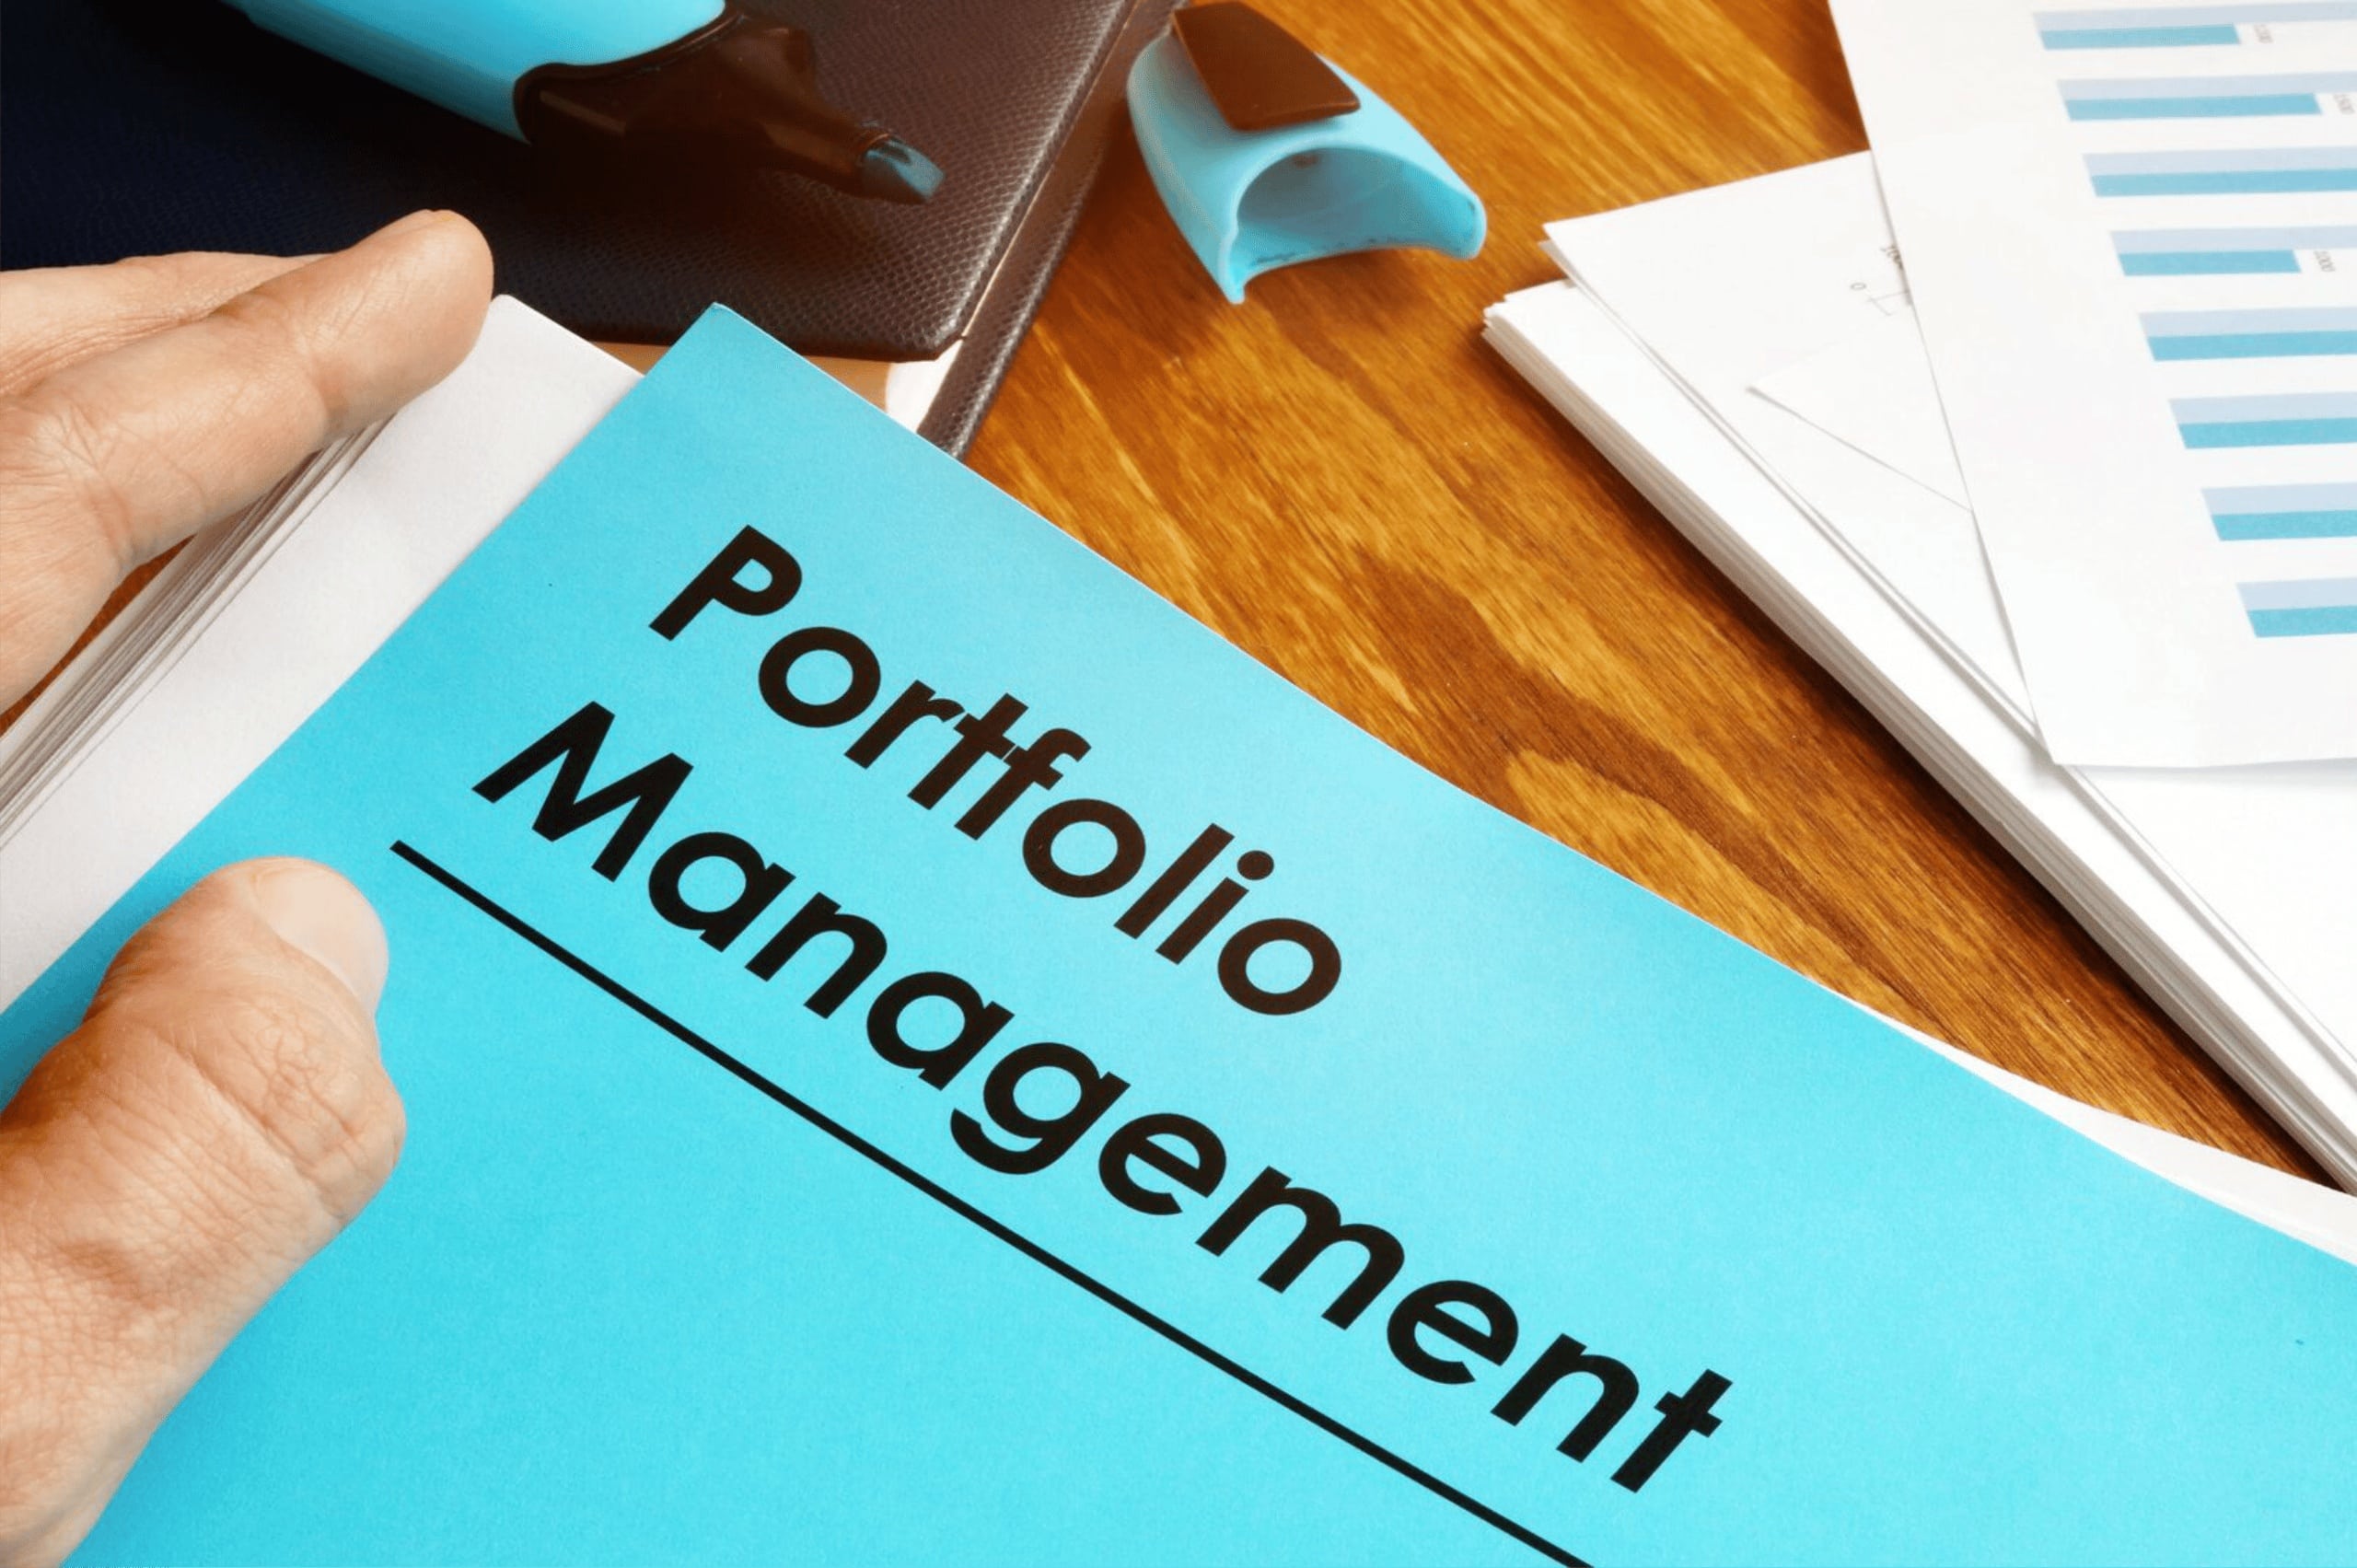 What is portfolio management